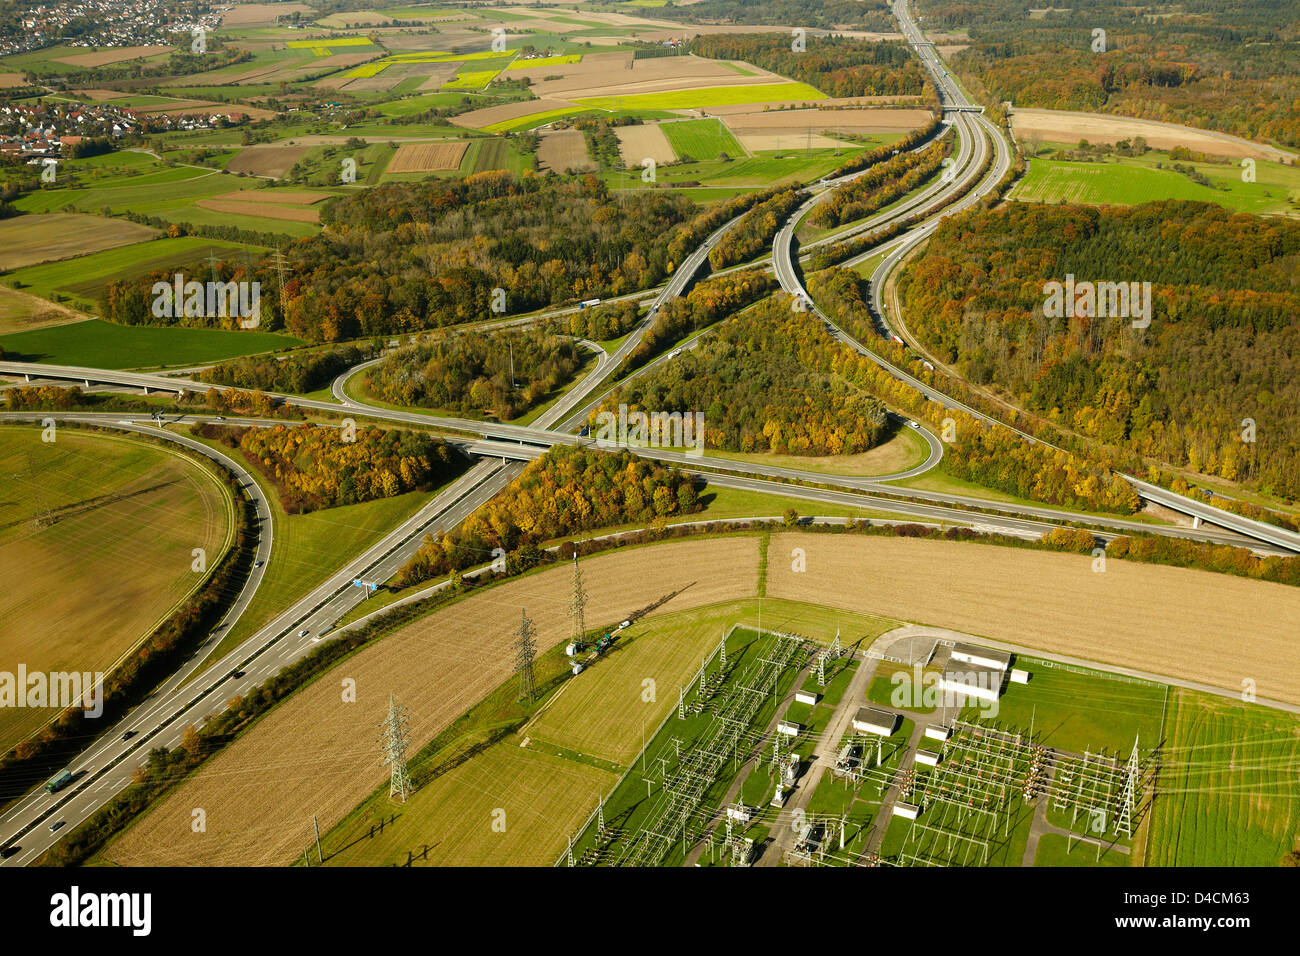 Jonction de l'autoroute A98 A81 B33, l'Hegau, Bade-Wurtemberg, Allemagne, Europe Banque D'Images